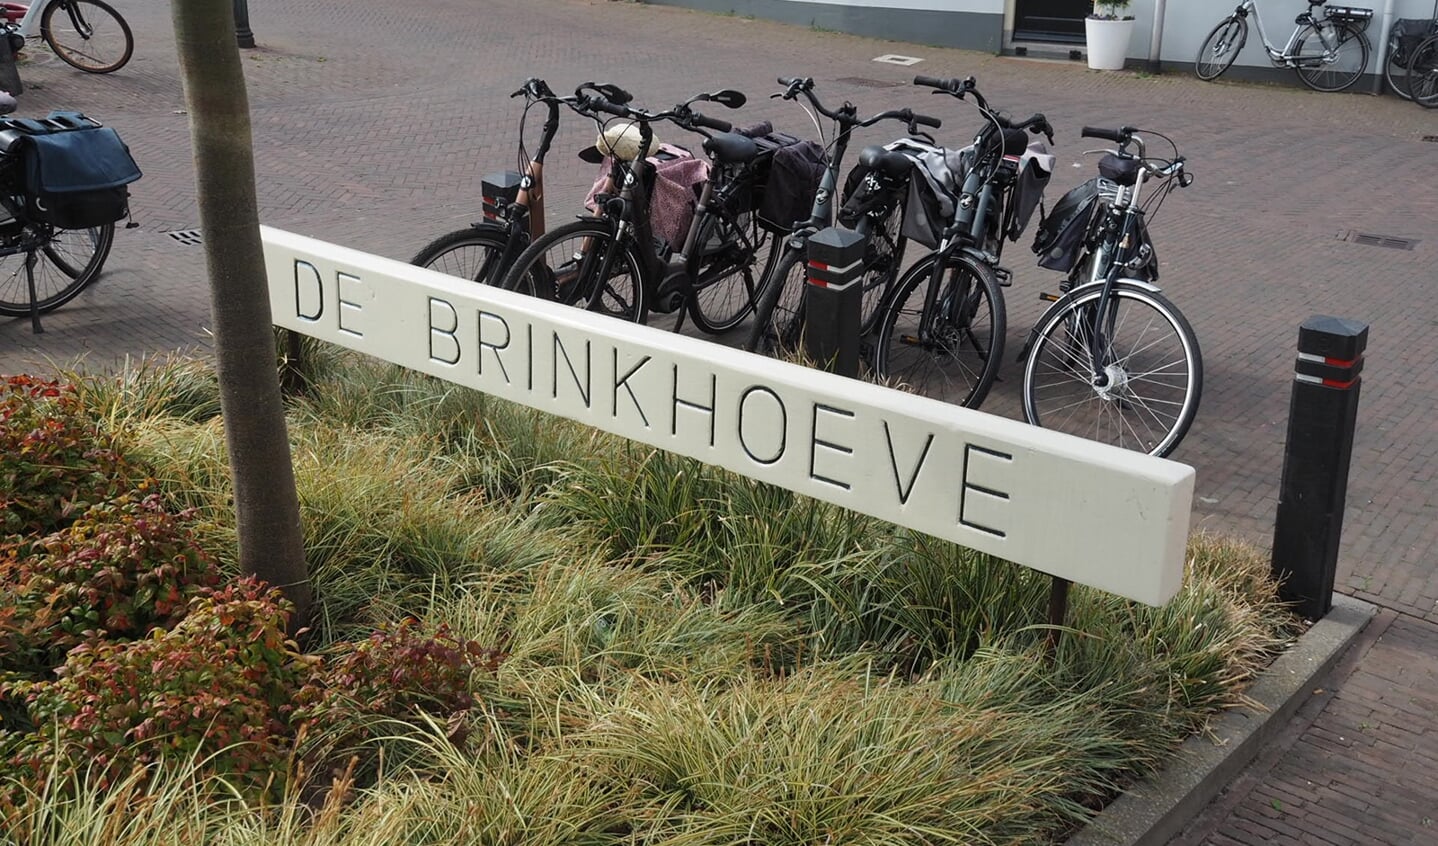 De scholenmarkt wordt gehouden in De Brinkhoeve.